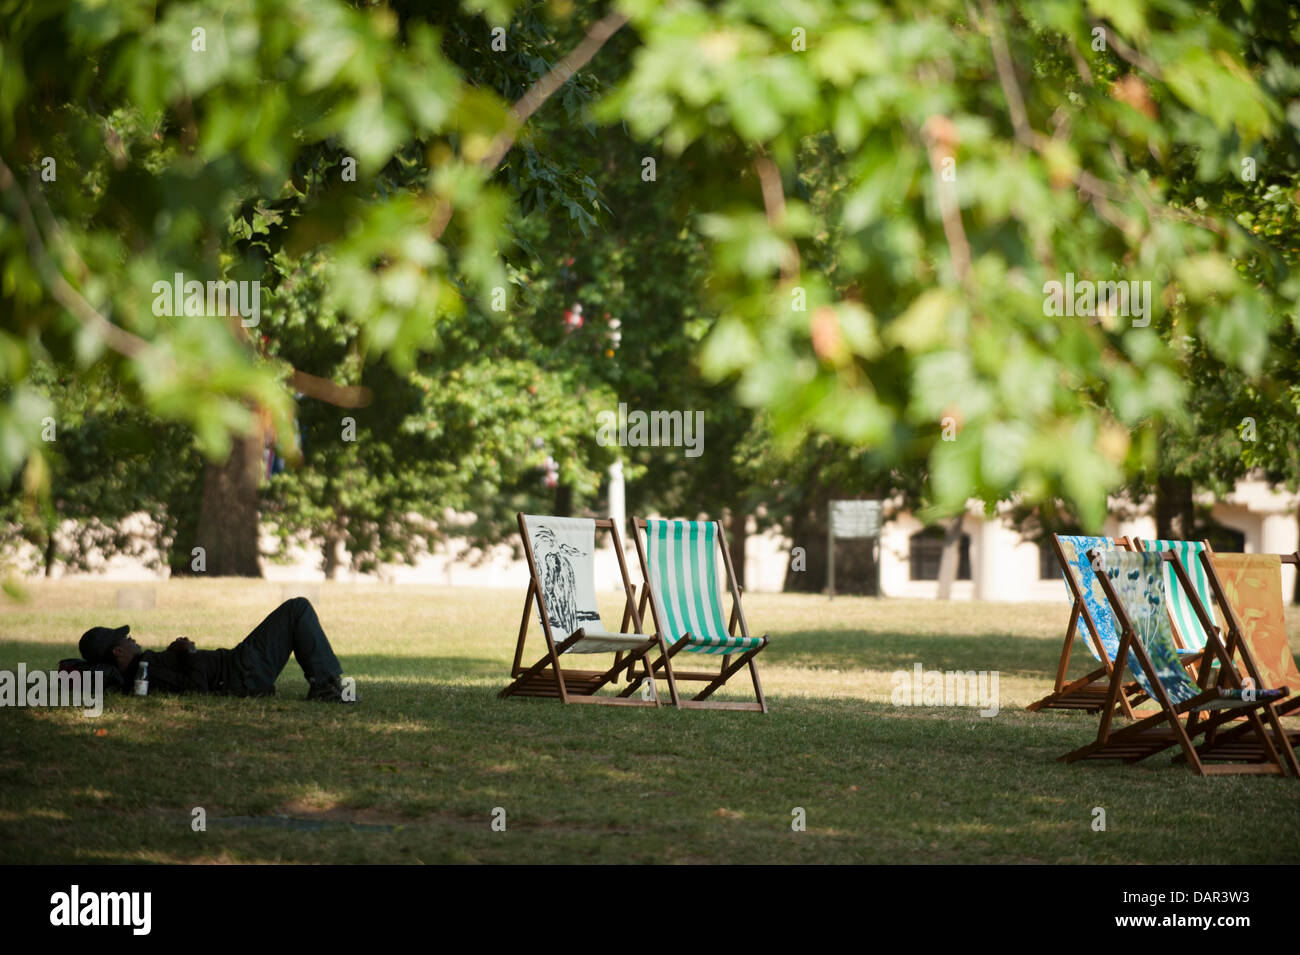 Londres, Royaume-Uni. 17 juillet, 2013. Transats assemblés dans St James's Park. Un niveau 3 d'alerte canicule a été publié aujourd'hui dans la région, la journée la plus chaude de l'année. Credit : Malcolm Park/Alamy Live News Banque D'Images